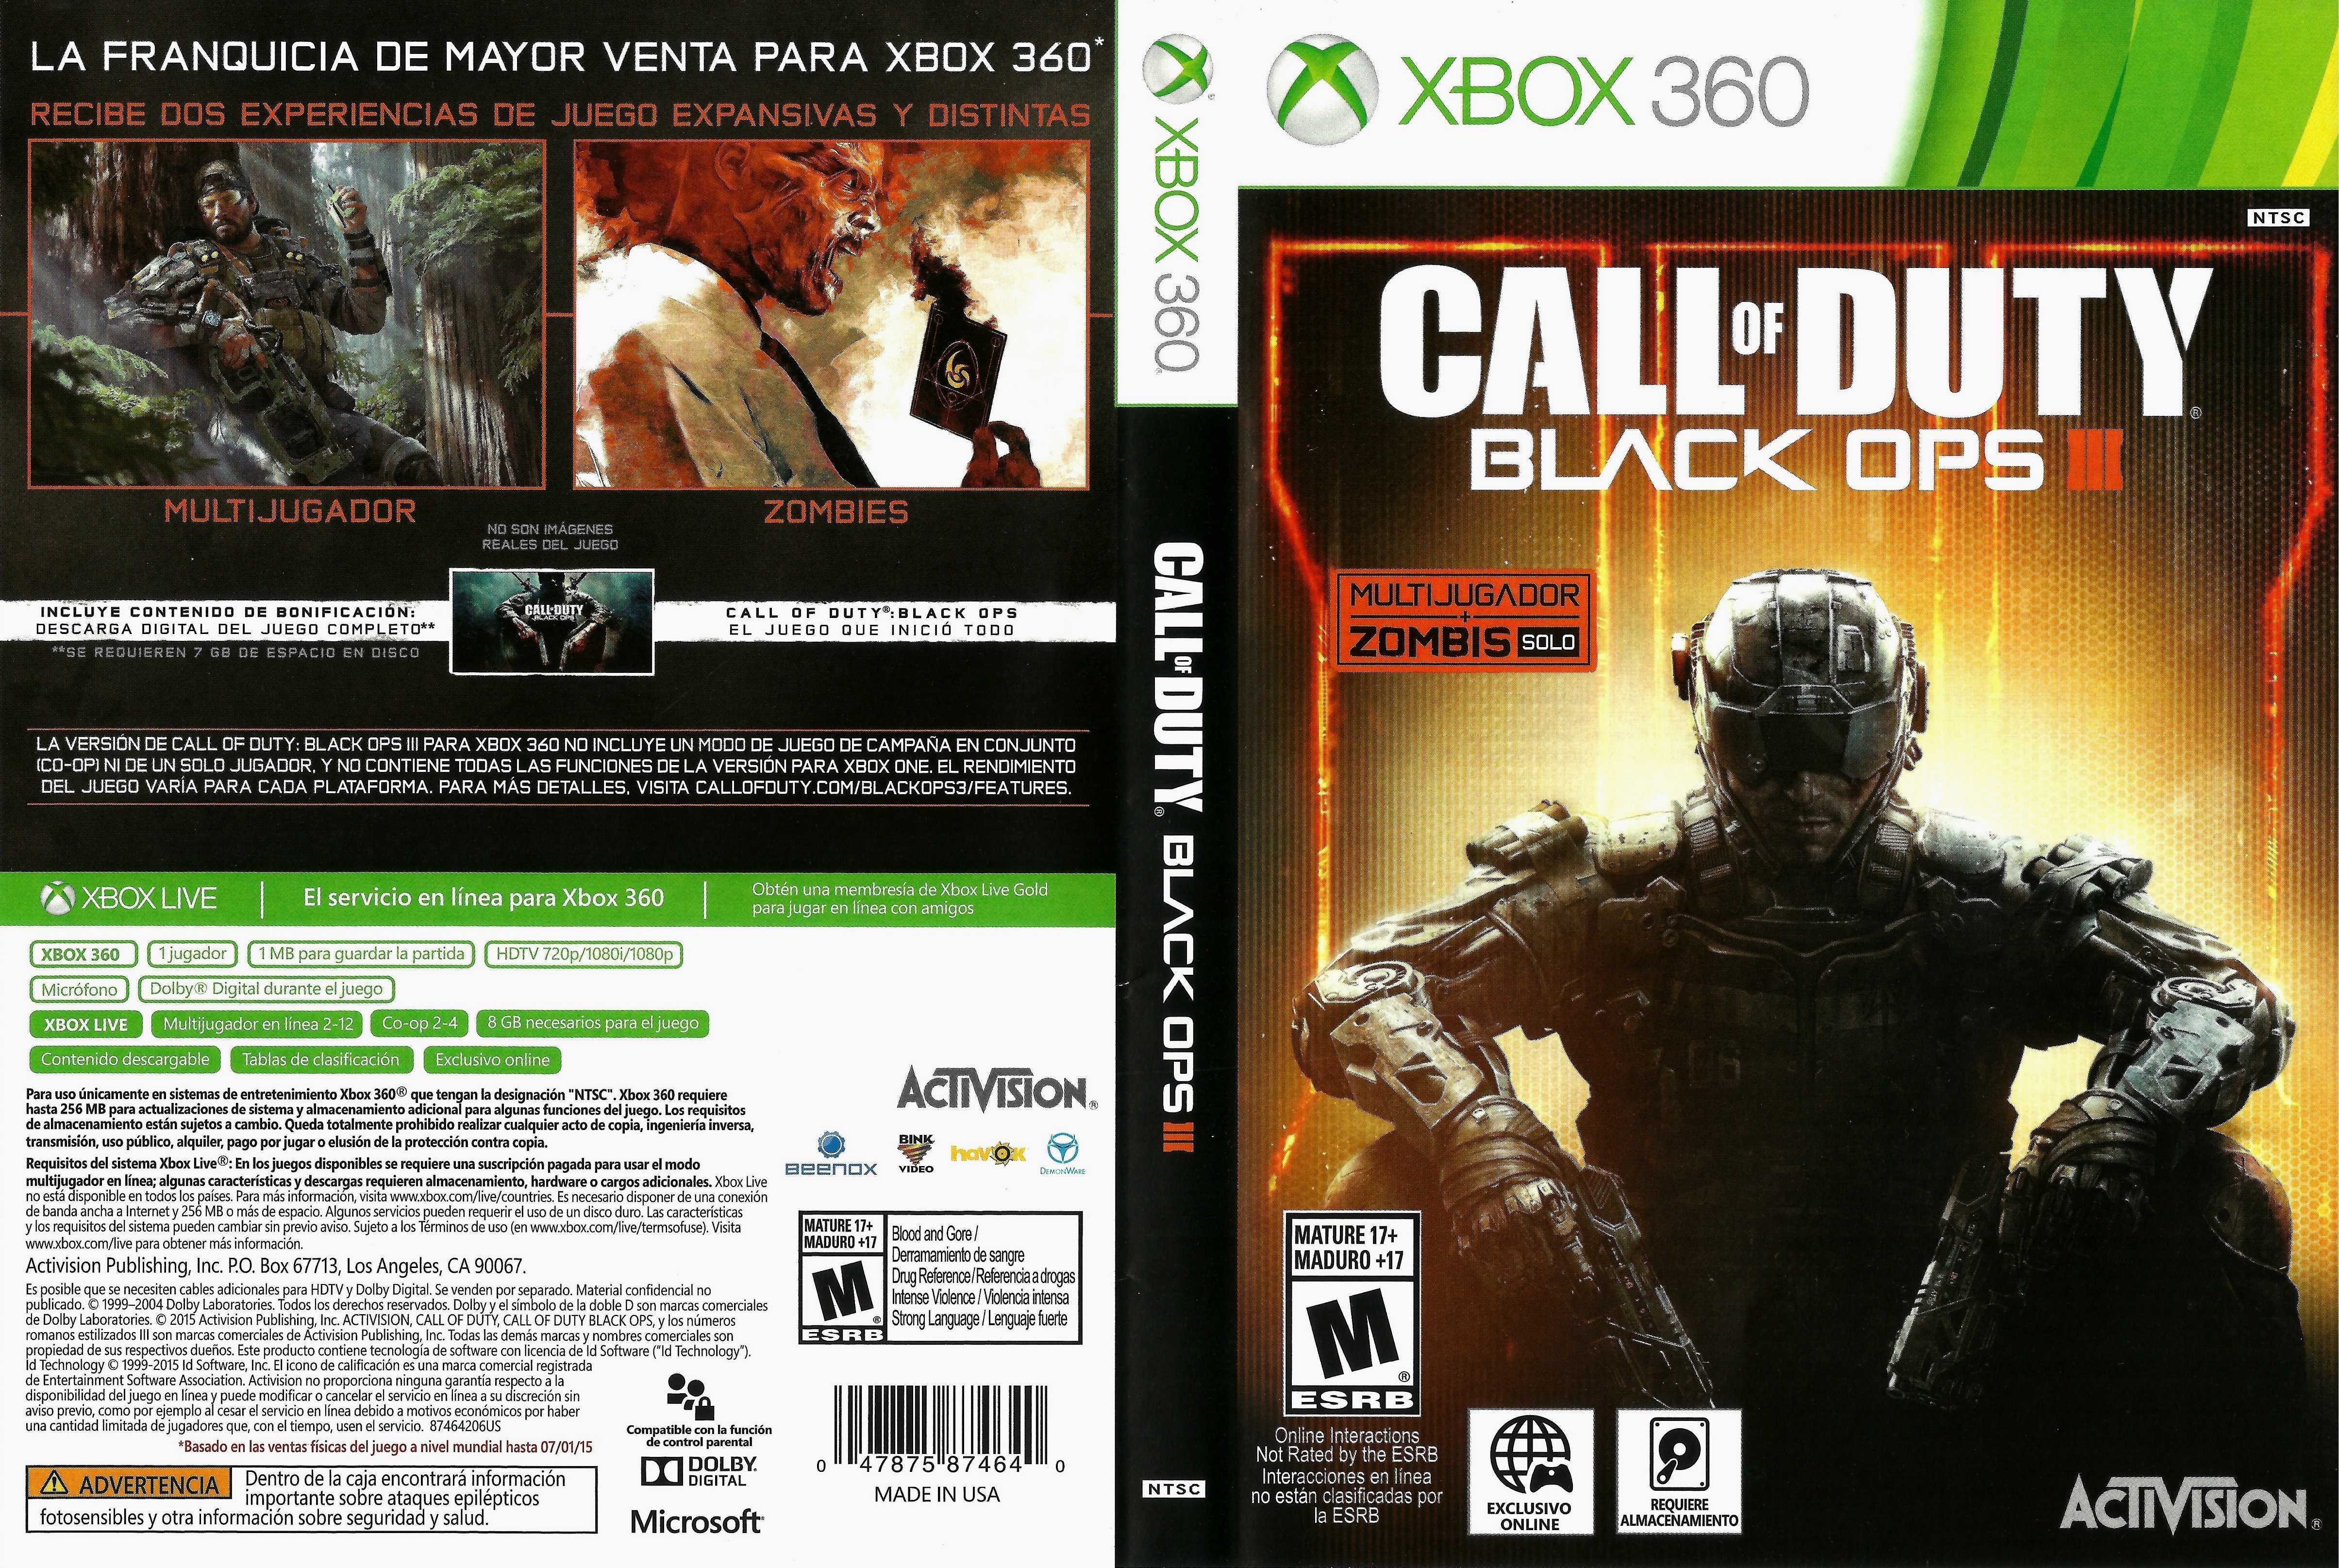 Код игры 360. Black ops Xbox 360 обложка. Cod Black ops 3 Xbox 360. Call of Duty Black ops 3 диск Xbox 360. Call of Duty 3 Xbox 360 диск.